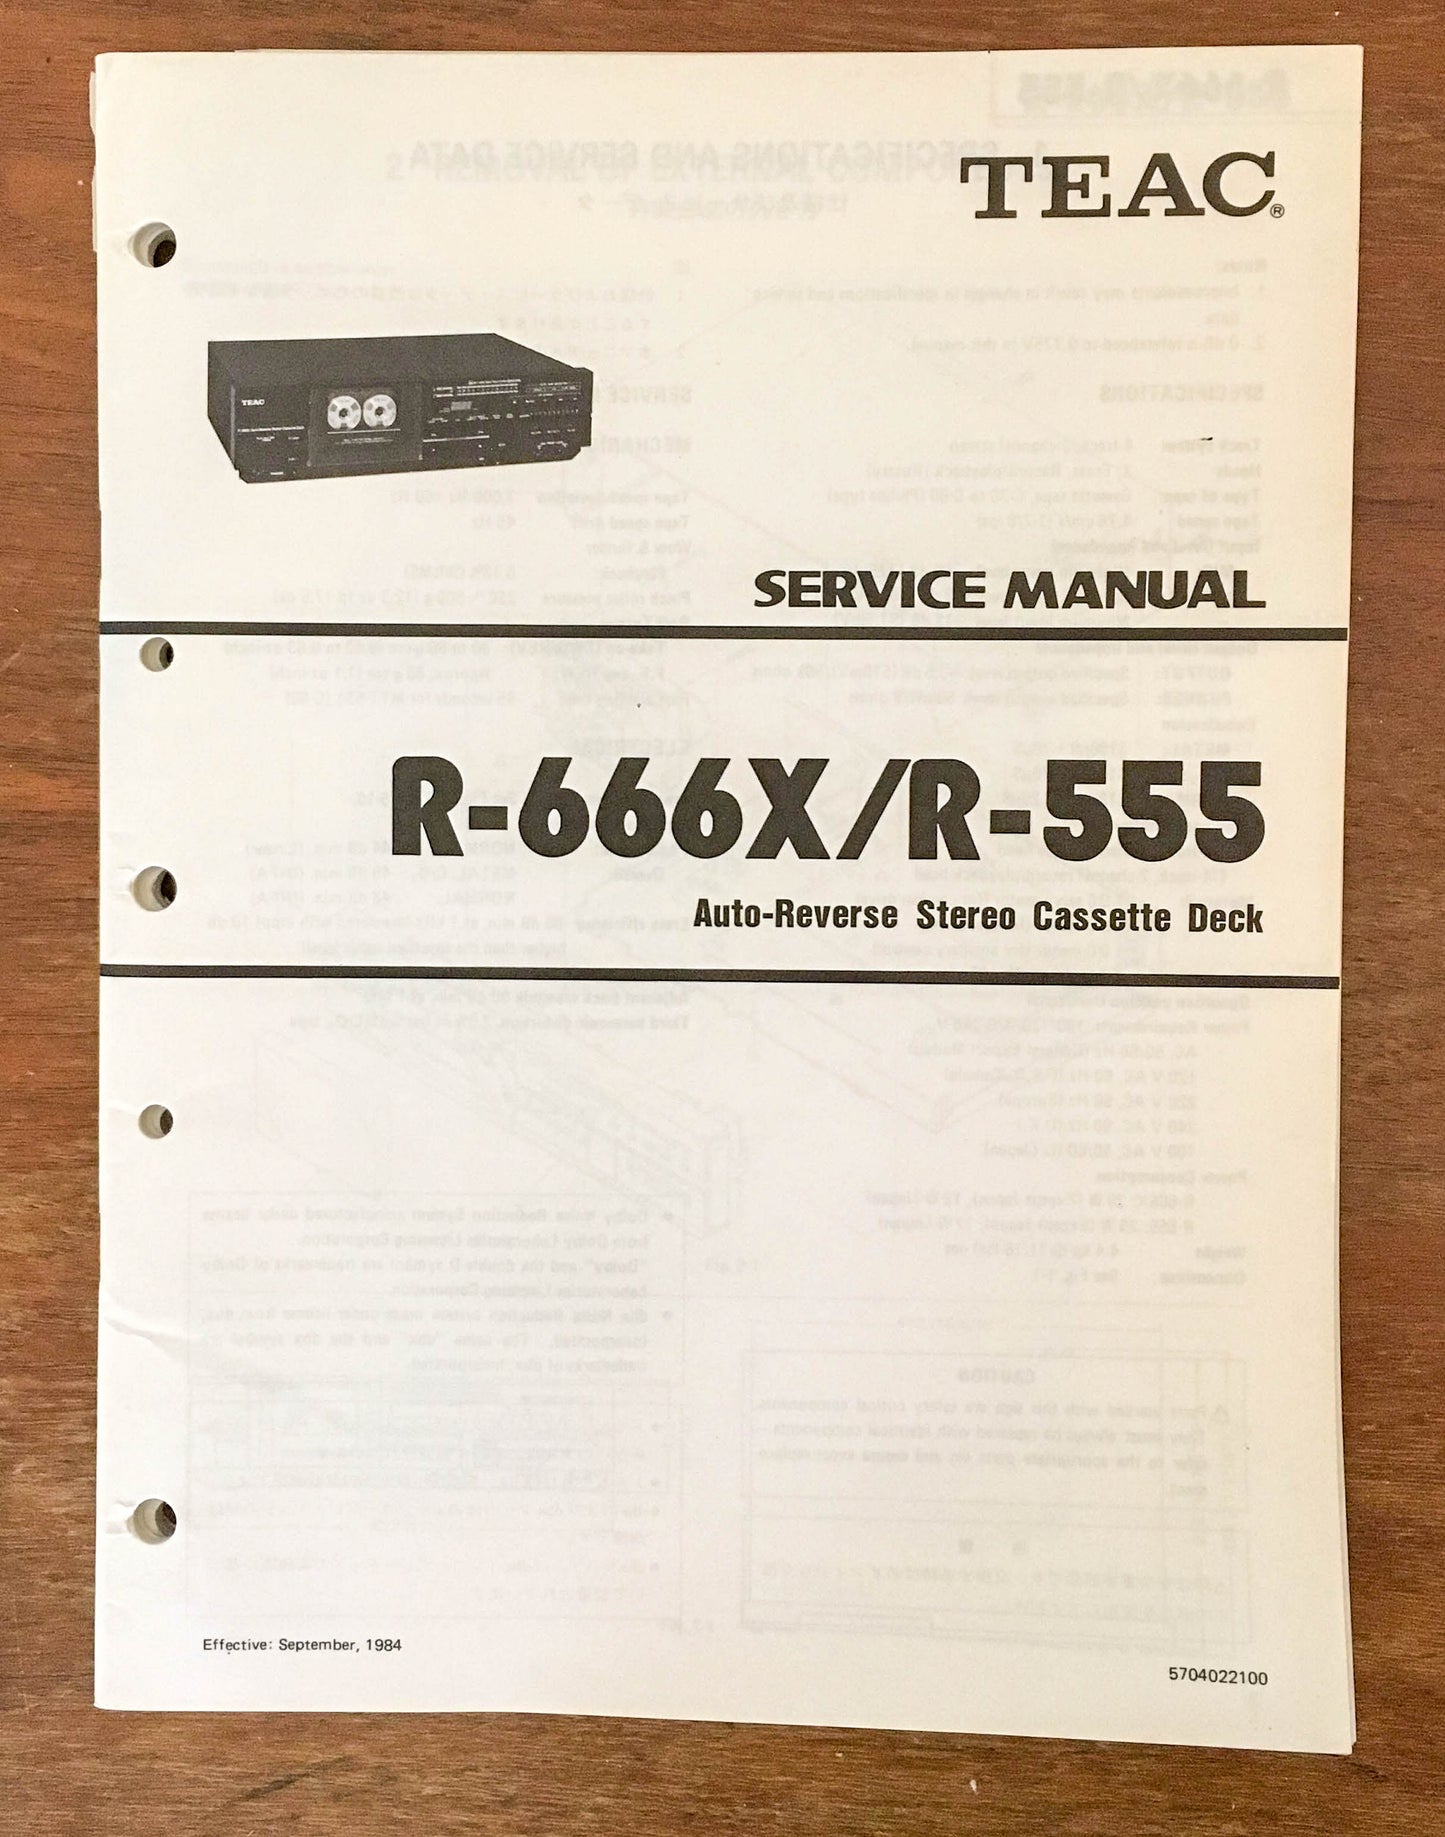 Teac R-666X / R-555 Cassette Deck Service Manual Notice *Original*